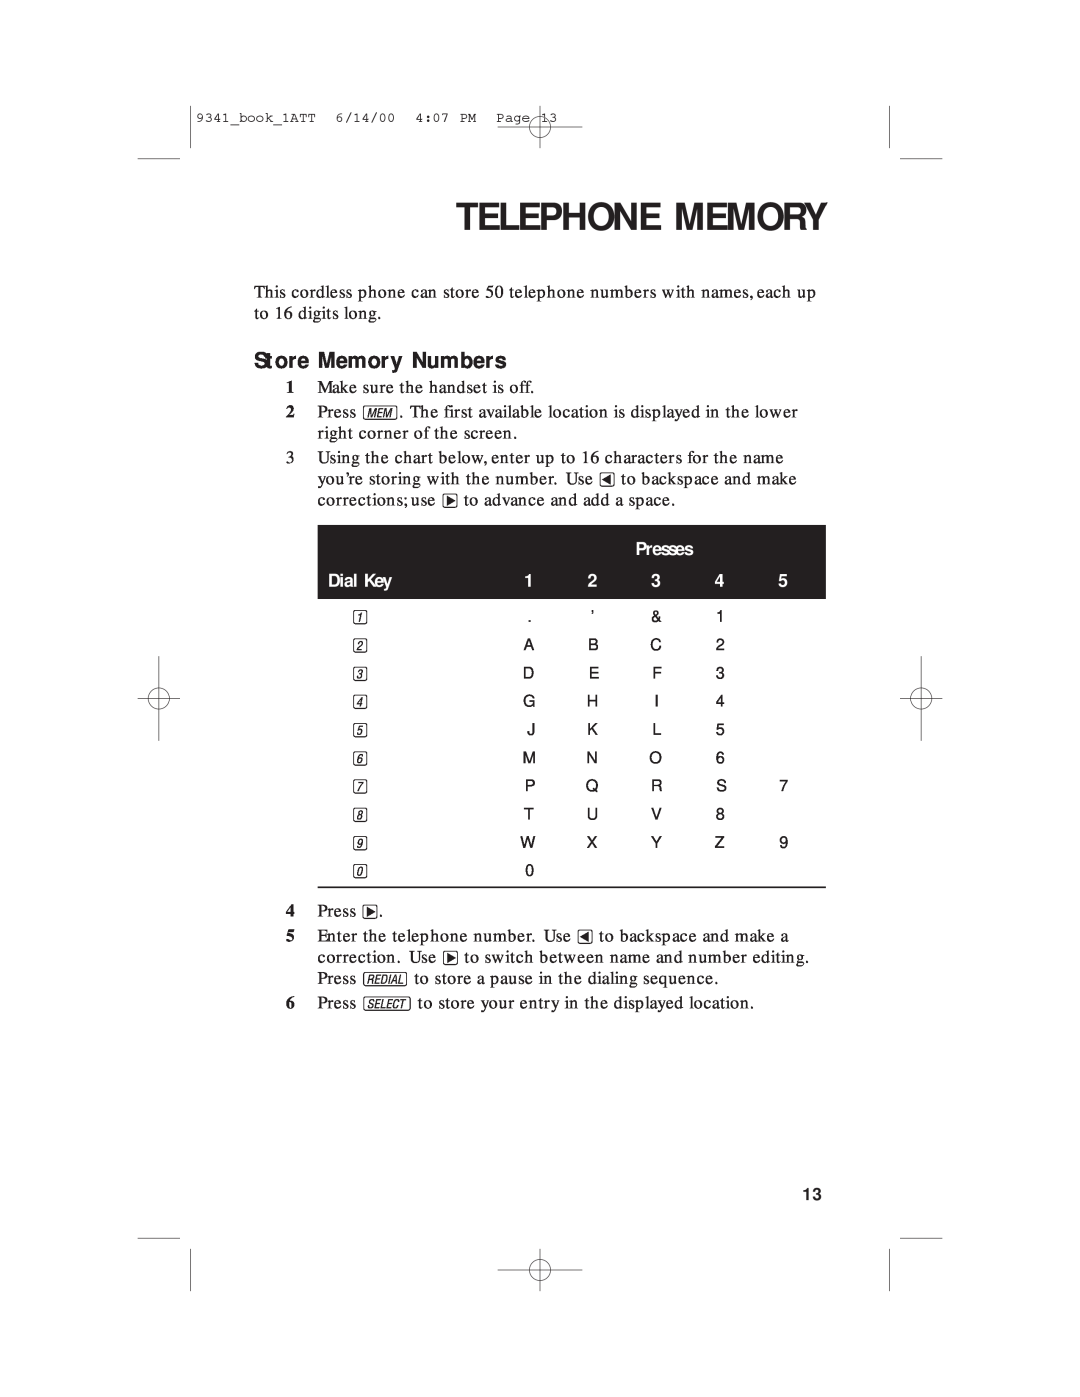 AT&T 9341 user manual Telephone Memory, Store Memory Numbers, Presses 